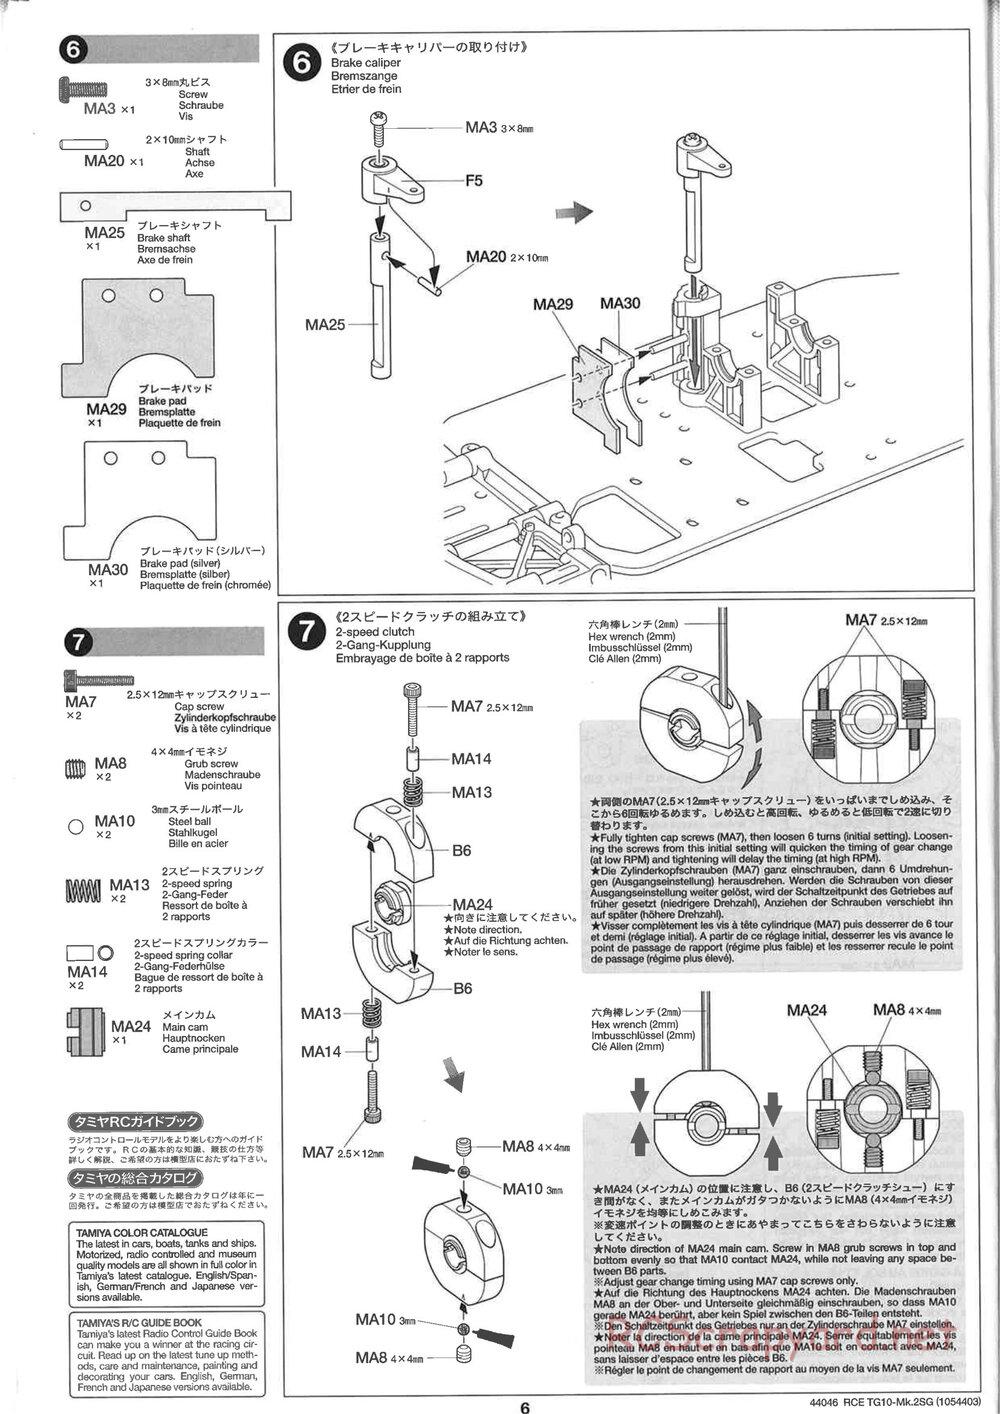 Tamiya - TG10 Mk.2SG Chassis - Manual - Page 6